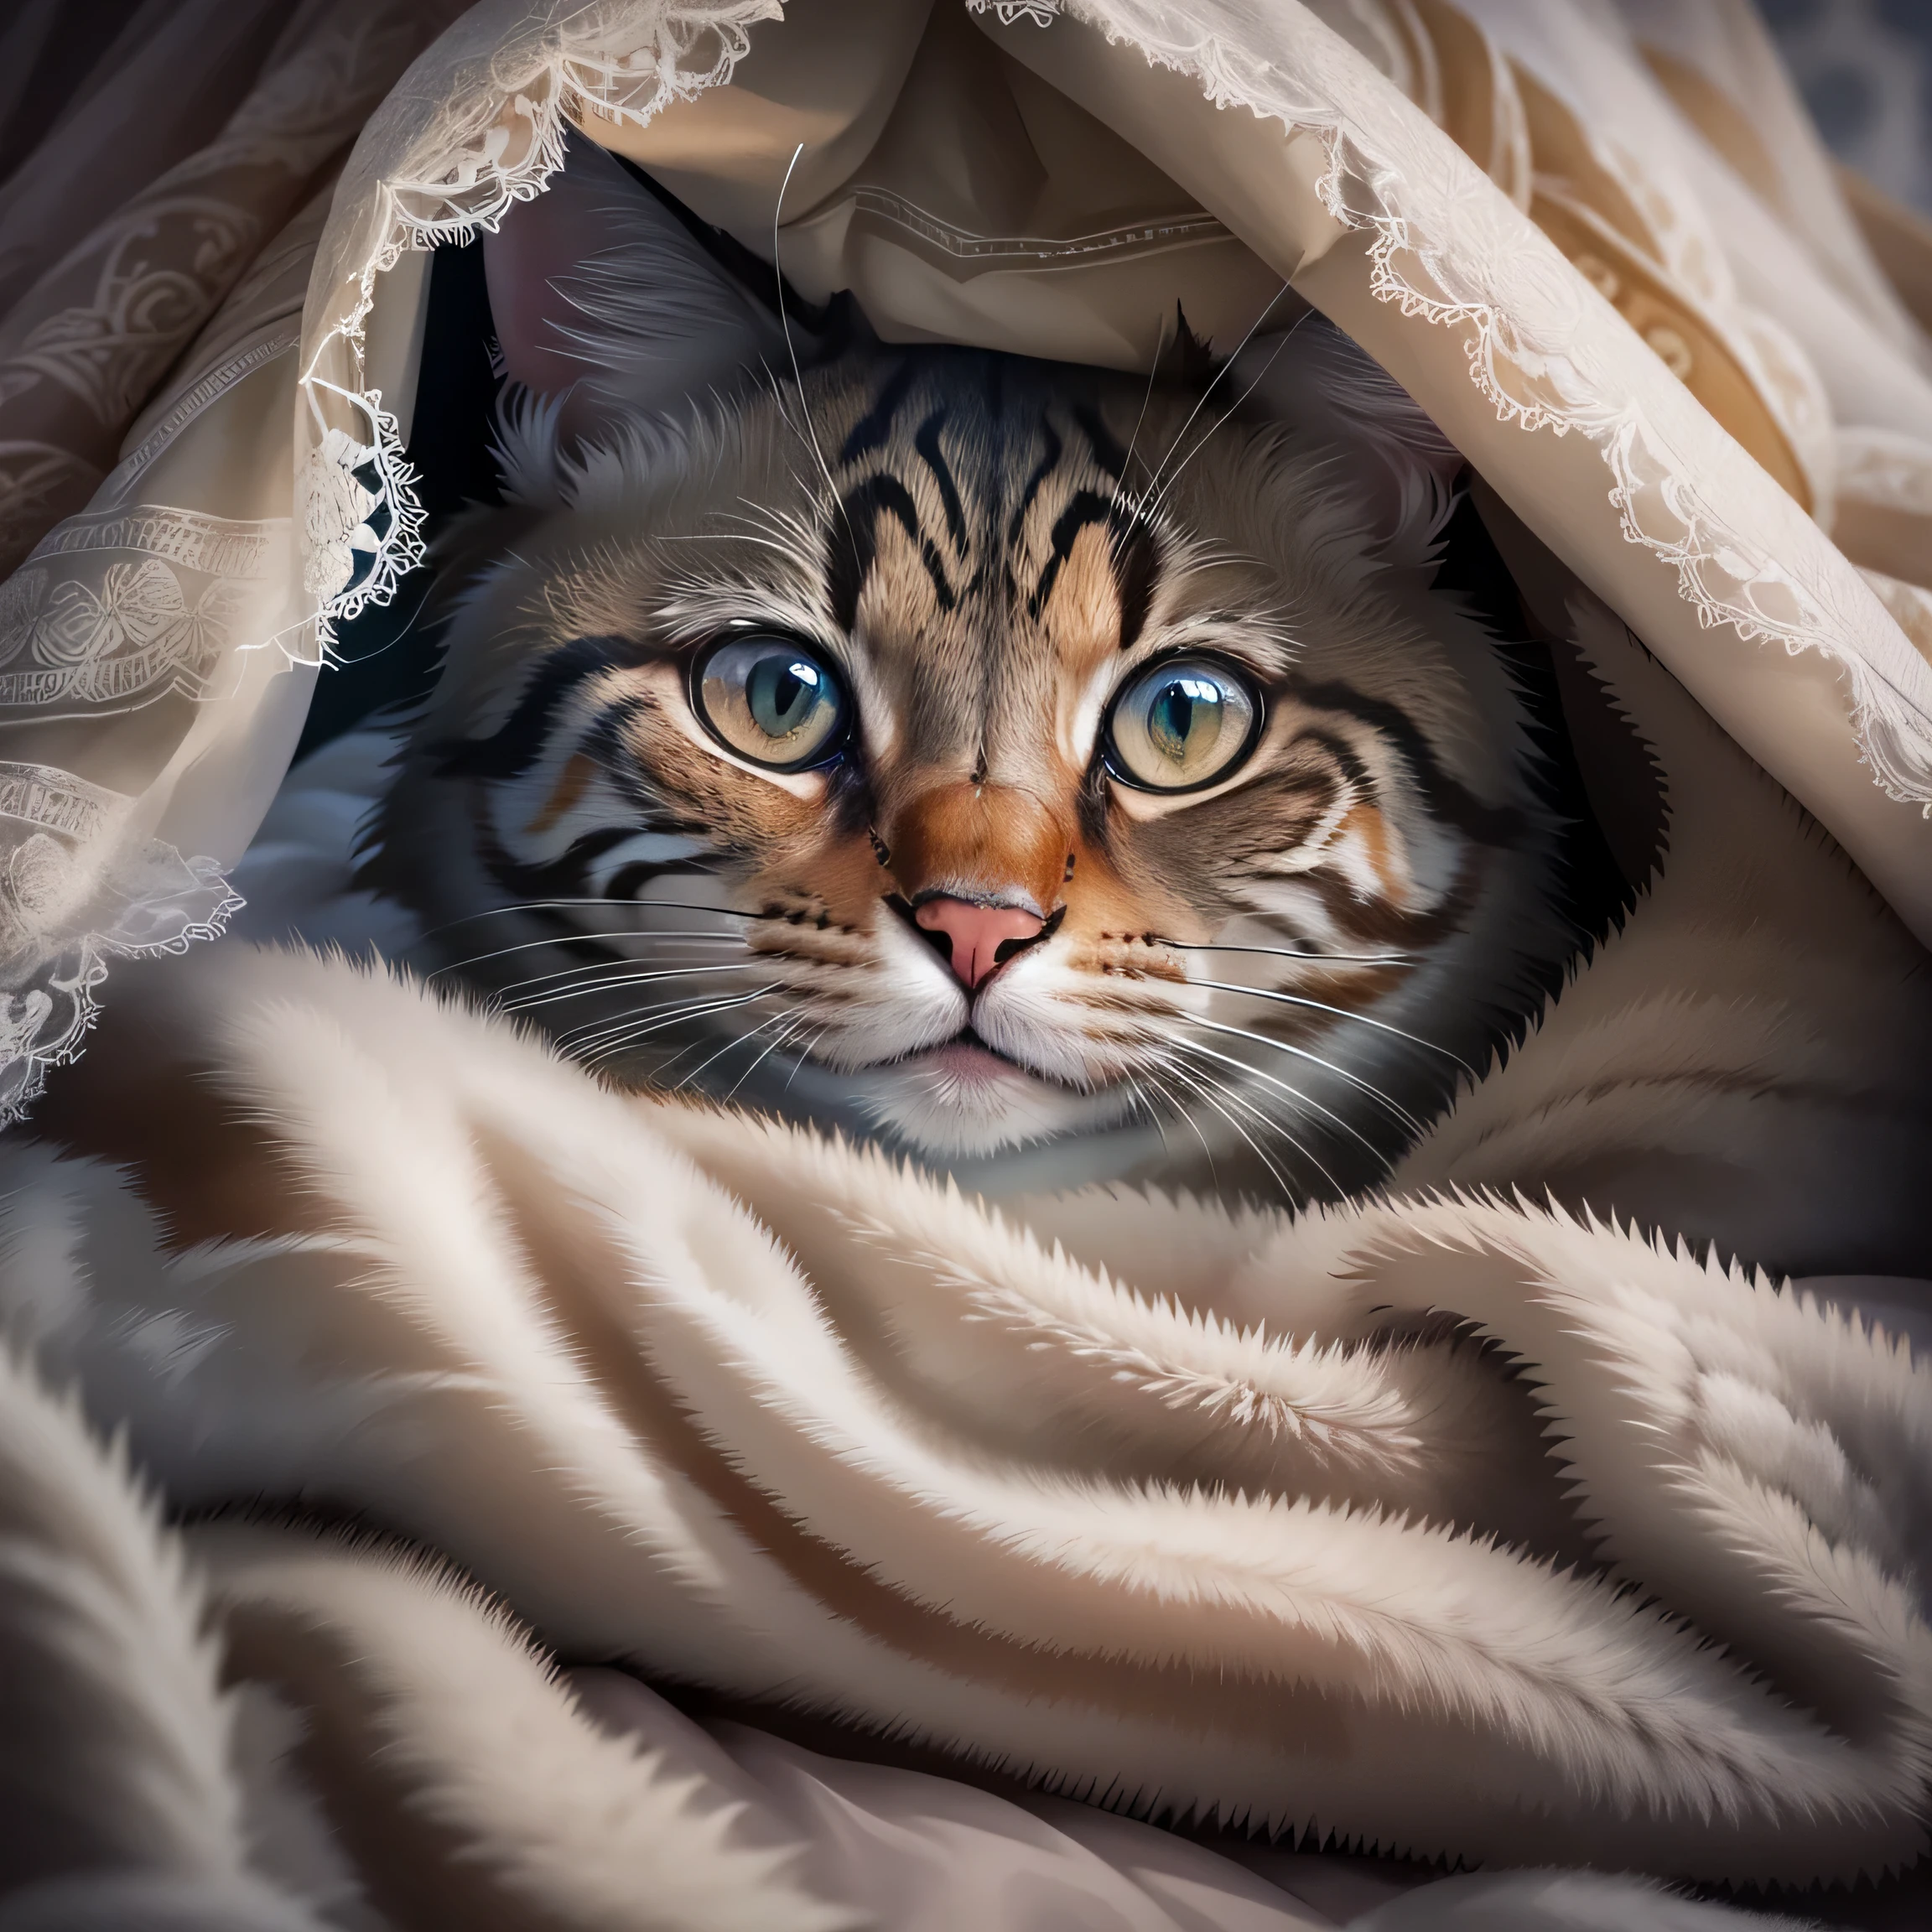 hay un gato que se esconde debajo de una manta, una foto de Niko Henrichon, contraventana, Photorealism, acurrucado bajo las sábanas, concealment, MIRANDOTE, cómodo debajo de la manta, Fotos De Gatos, cubierto con una manta, Cute Fotos De Gatos, expresión asustada, Gato enfermo acostado en el dormitorio., mirando a la cámara